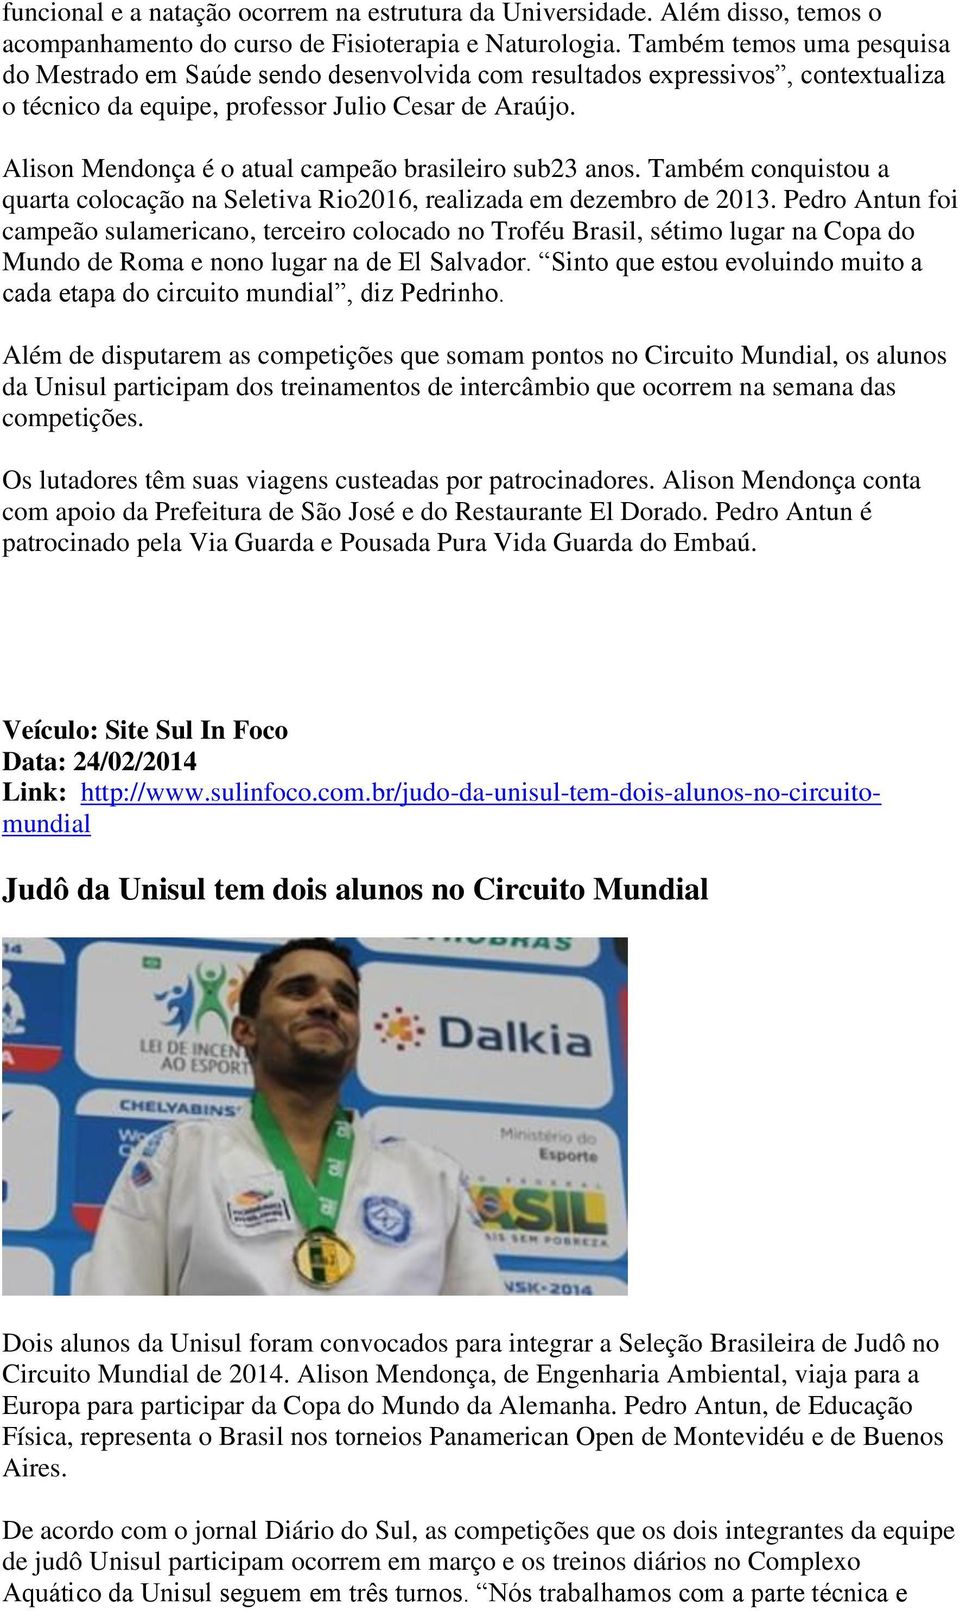 Alison Mendonça é o atual campeão brasileiro sub23 anos. Também conquistou a quarta colocação na Seletiva Rio2016, realizada em dezembro de 2013.